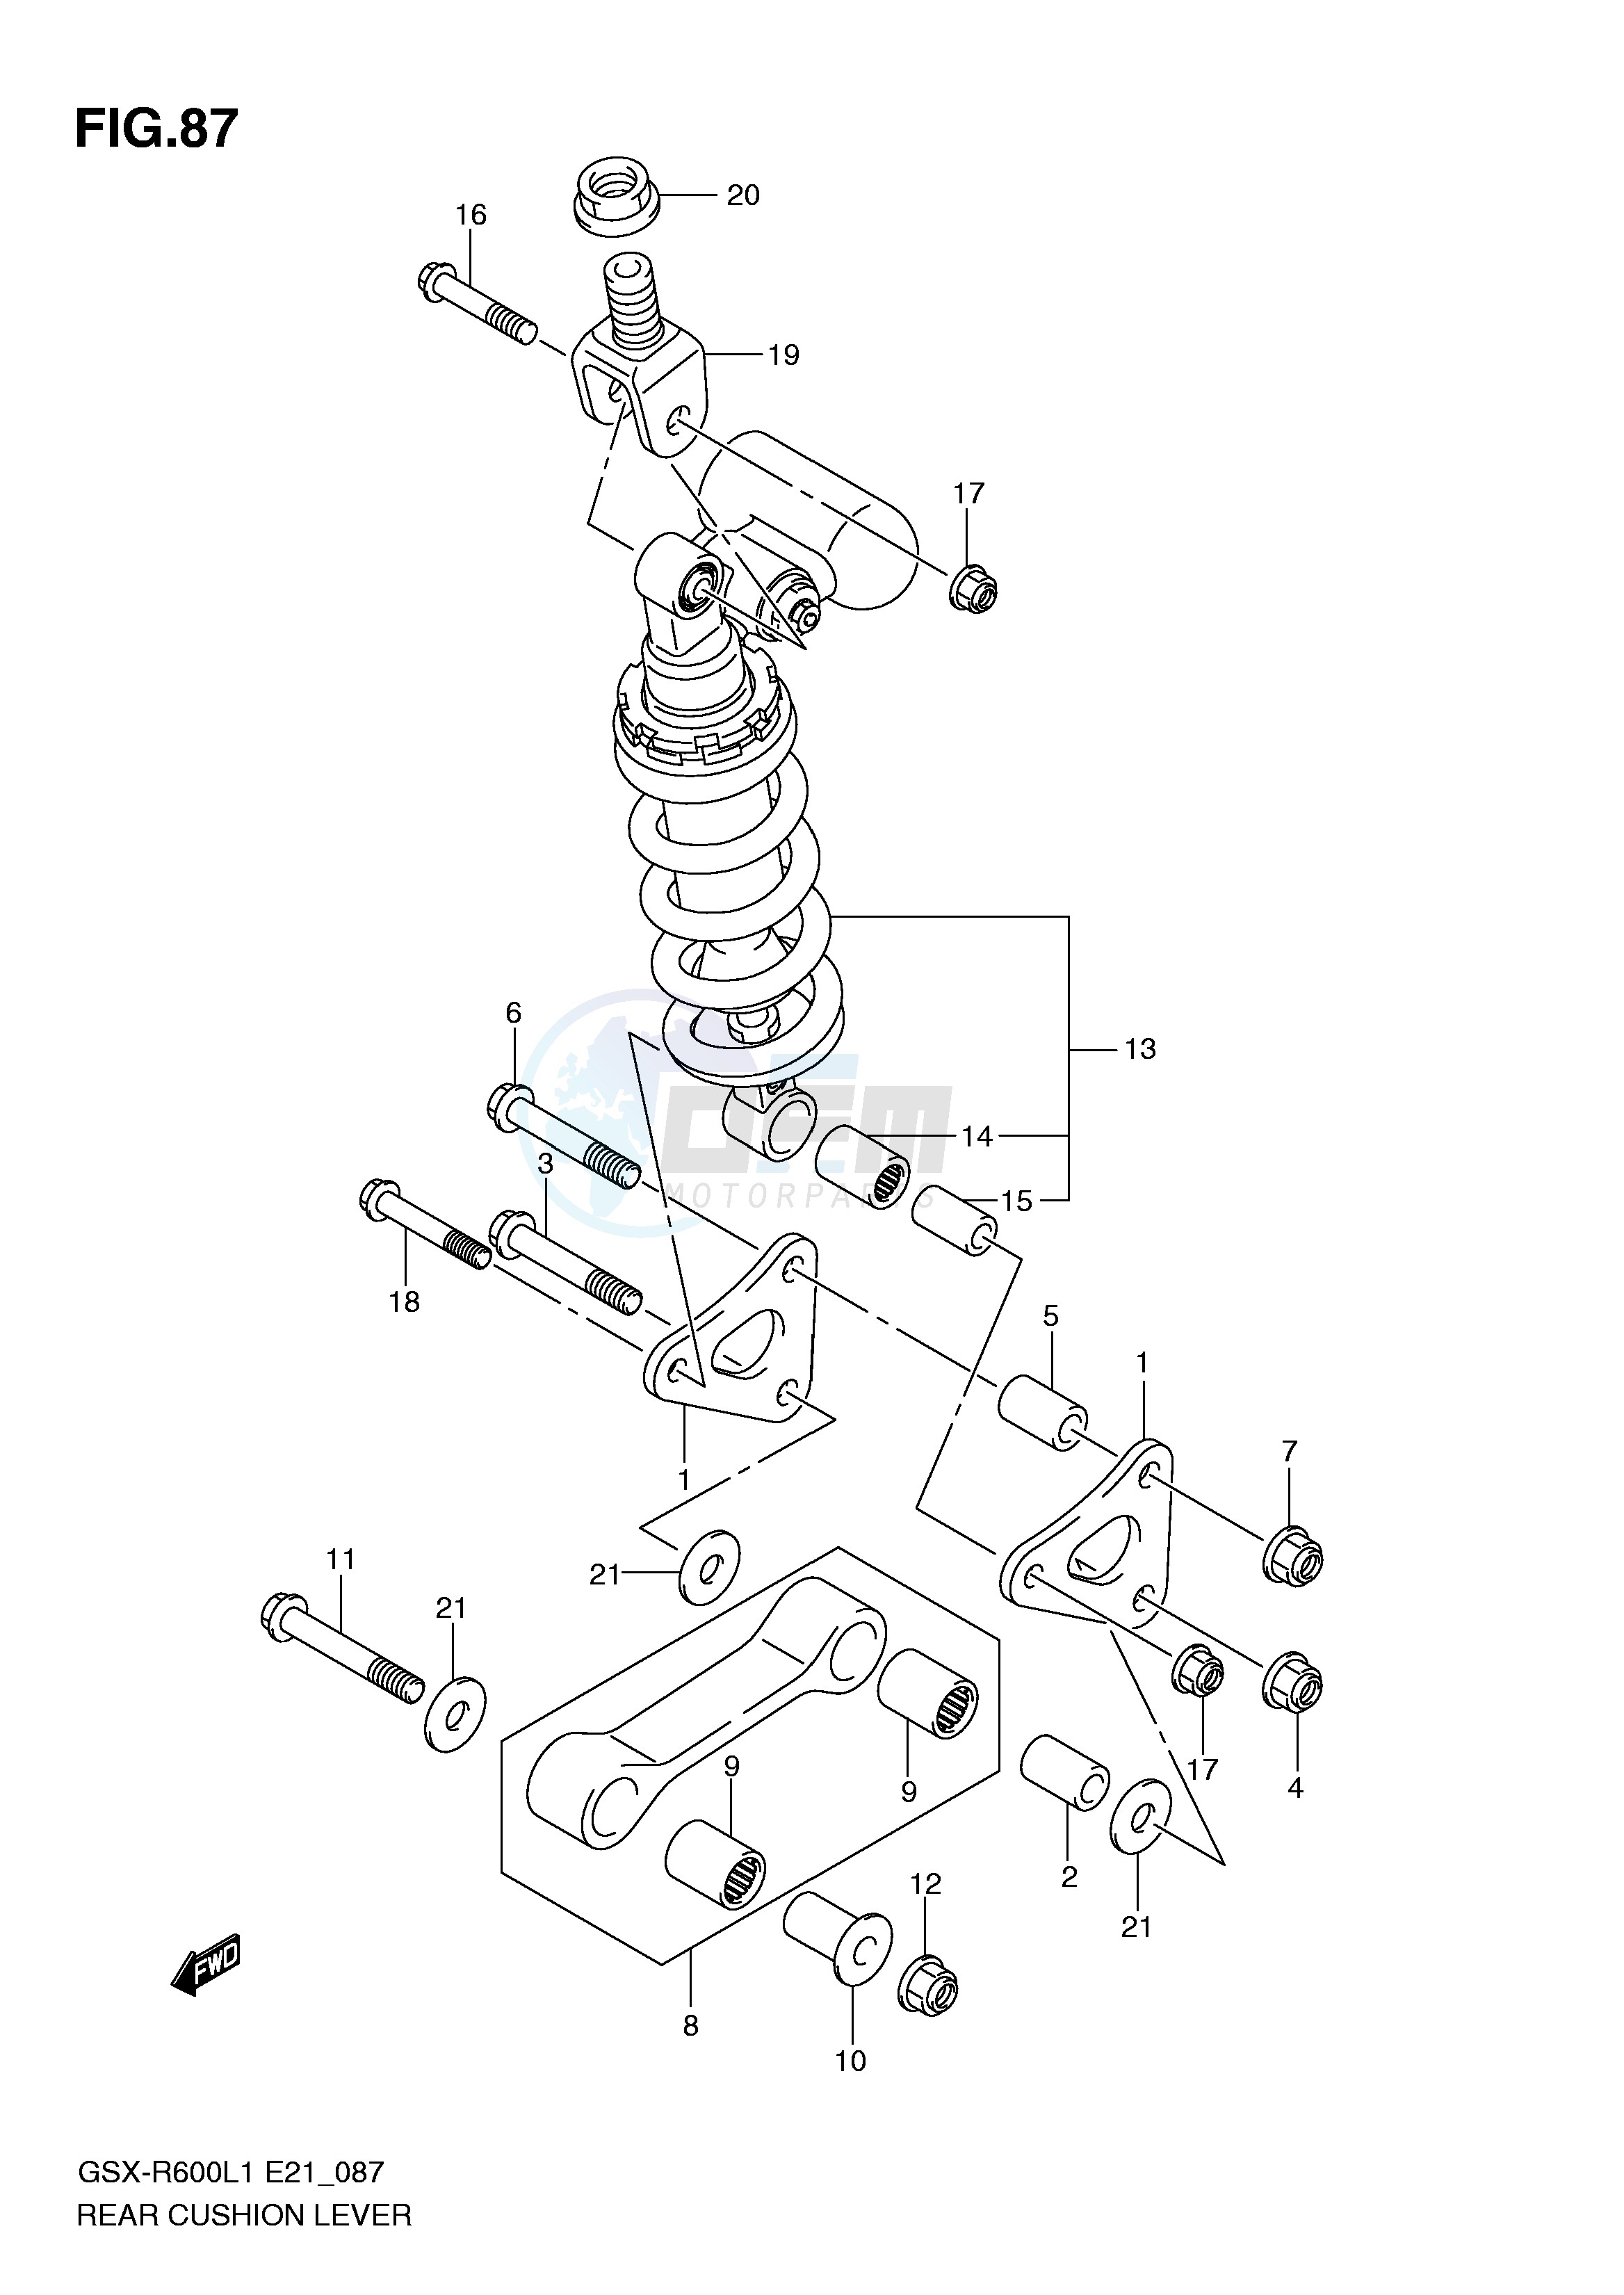 REAR CUSHION LEVER (GSX-R600L1 E24) blueprint